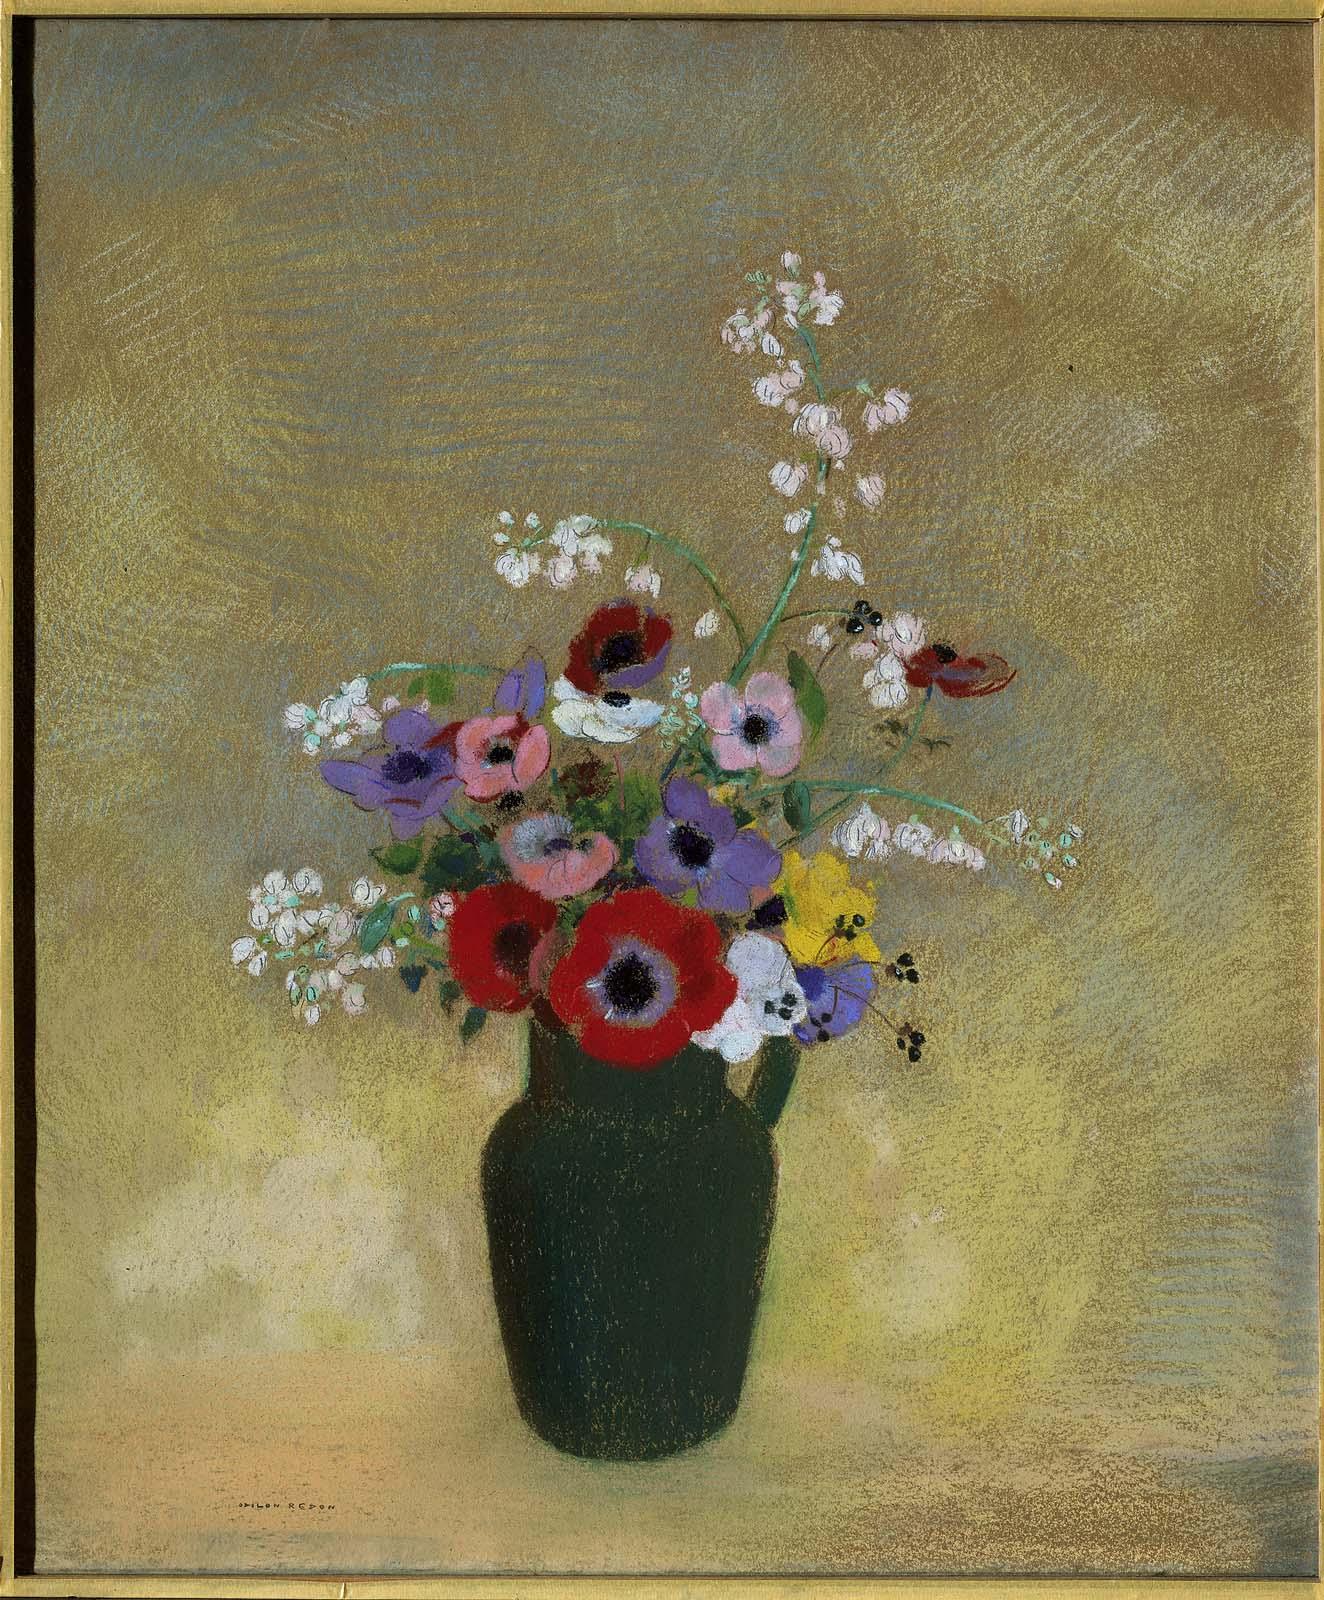 Velká zelená váza se směsicí květin by Odilon Redon - 1910-1912 - 74,3 x 62,2 cm 